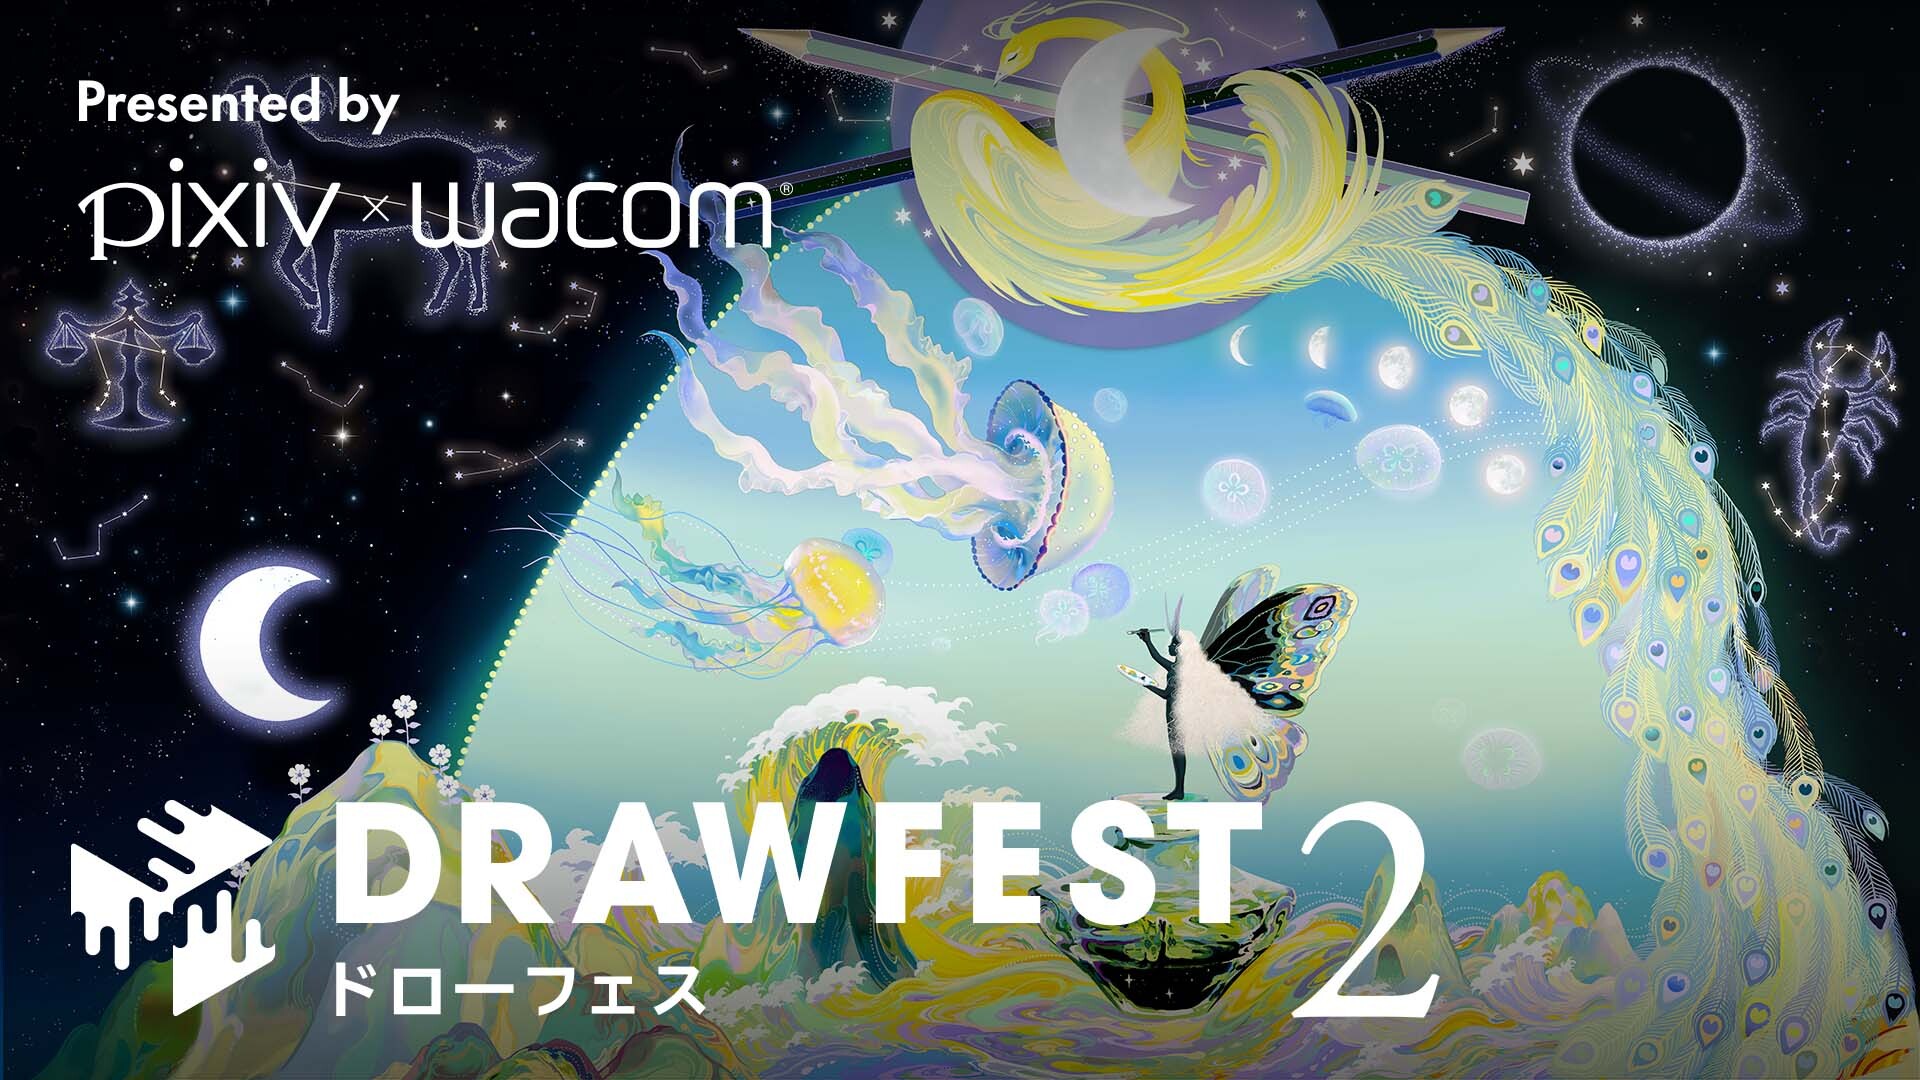 セルシスが、pixivとワコム共同開催の大規模オンライン講習・作画フェス「Drawfest 2」に協賛